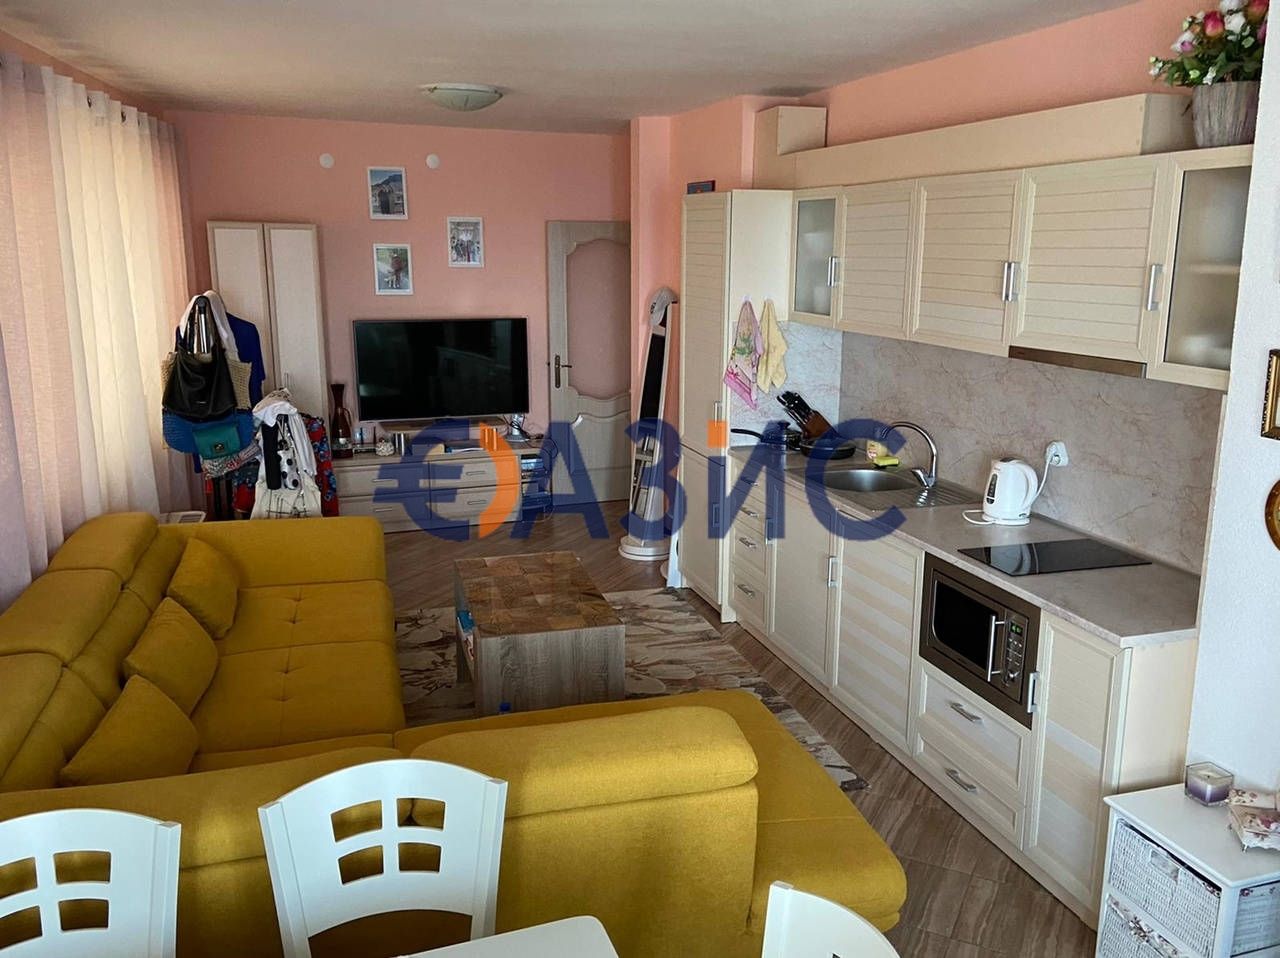 Apartment in Tsarevo, Bulgaria, 90 sq.m - picture 1